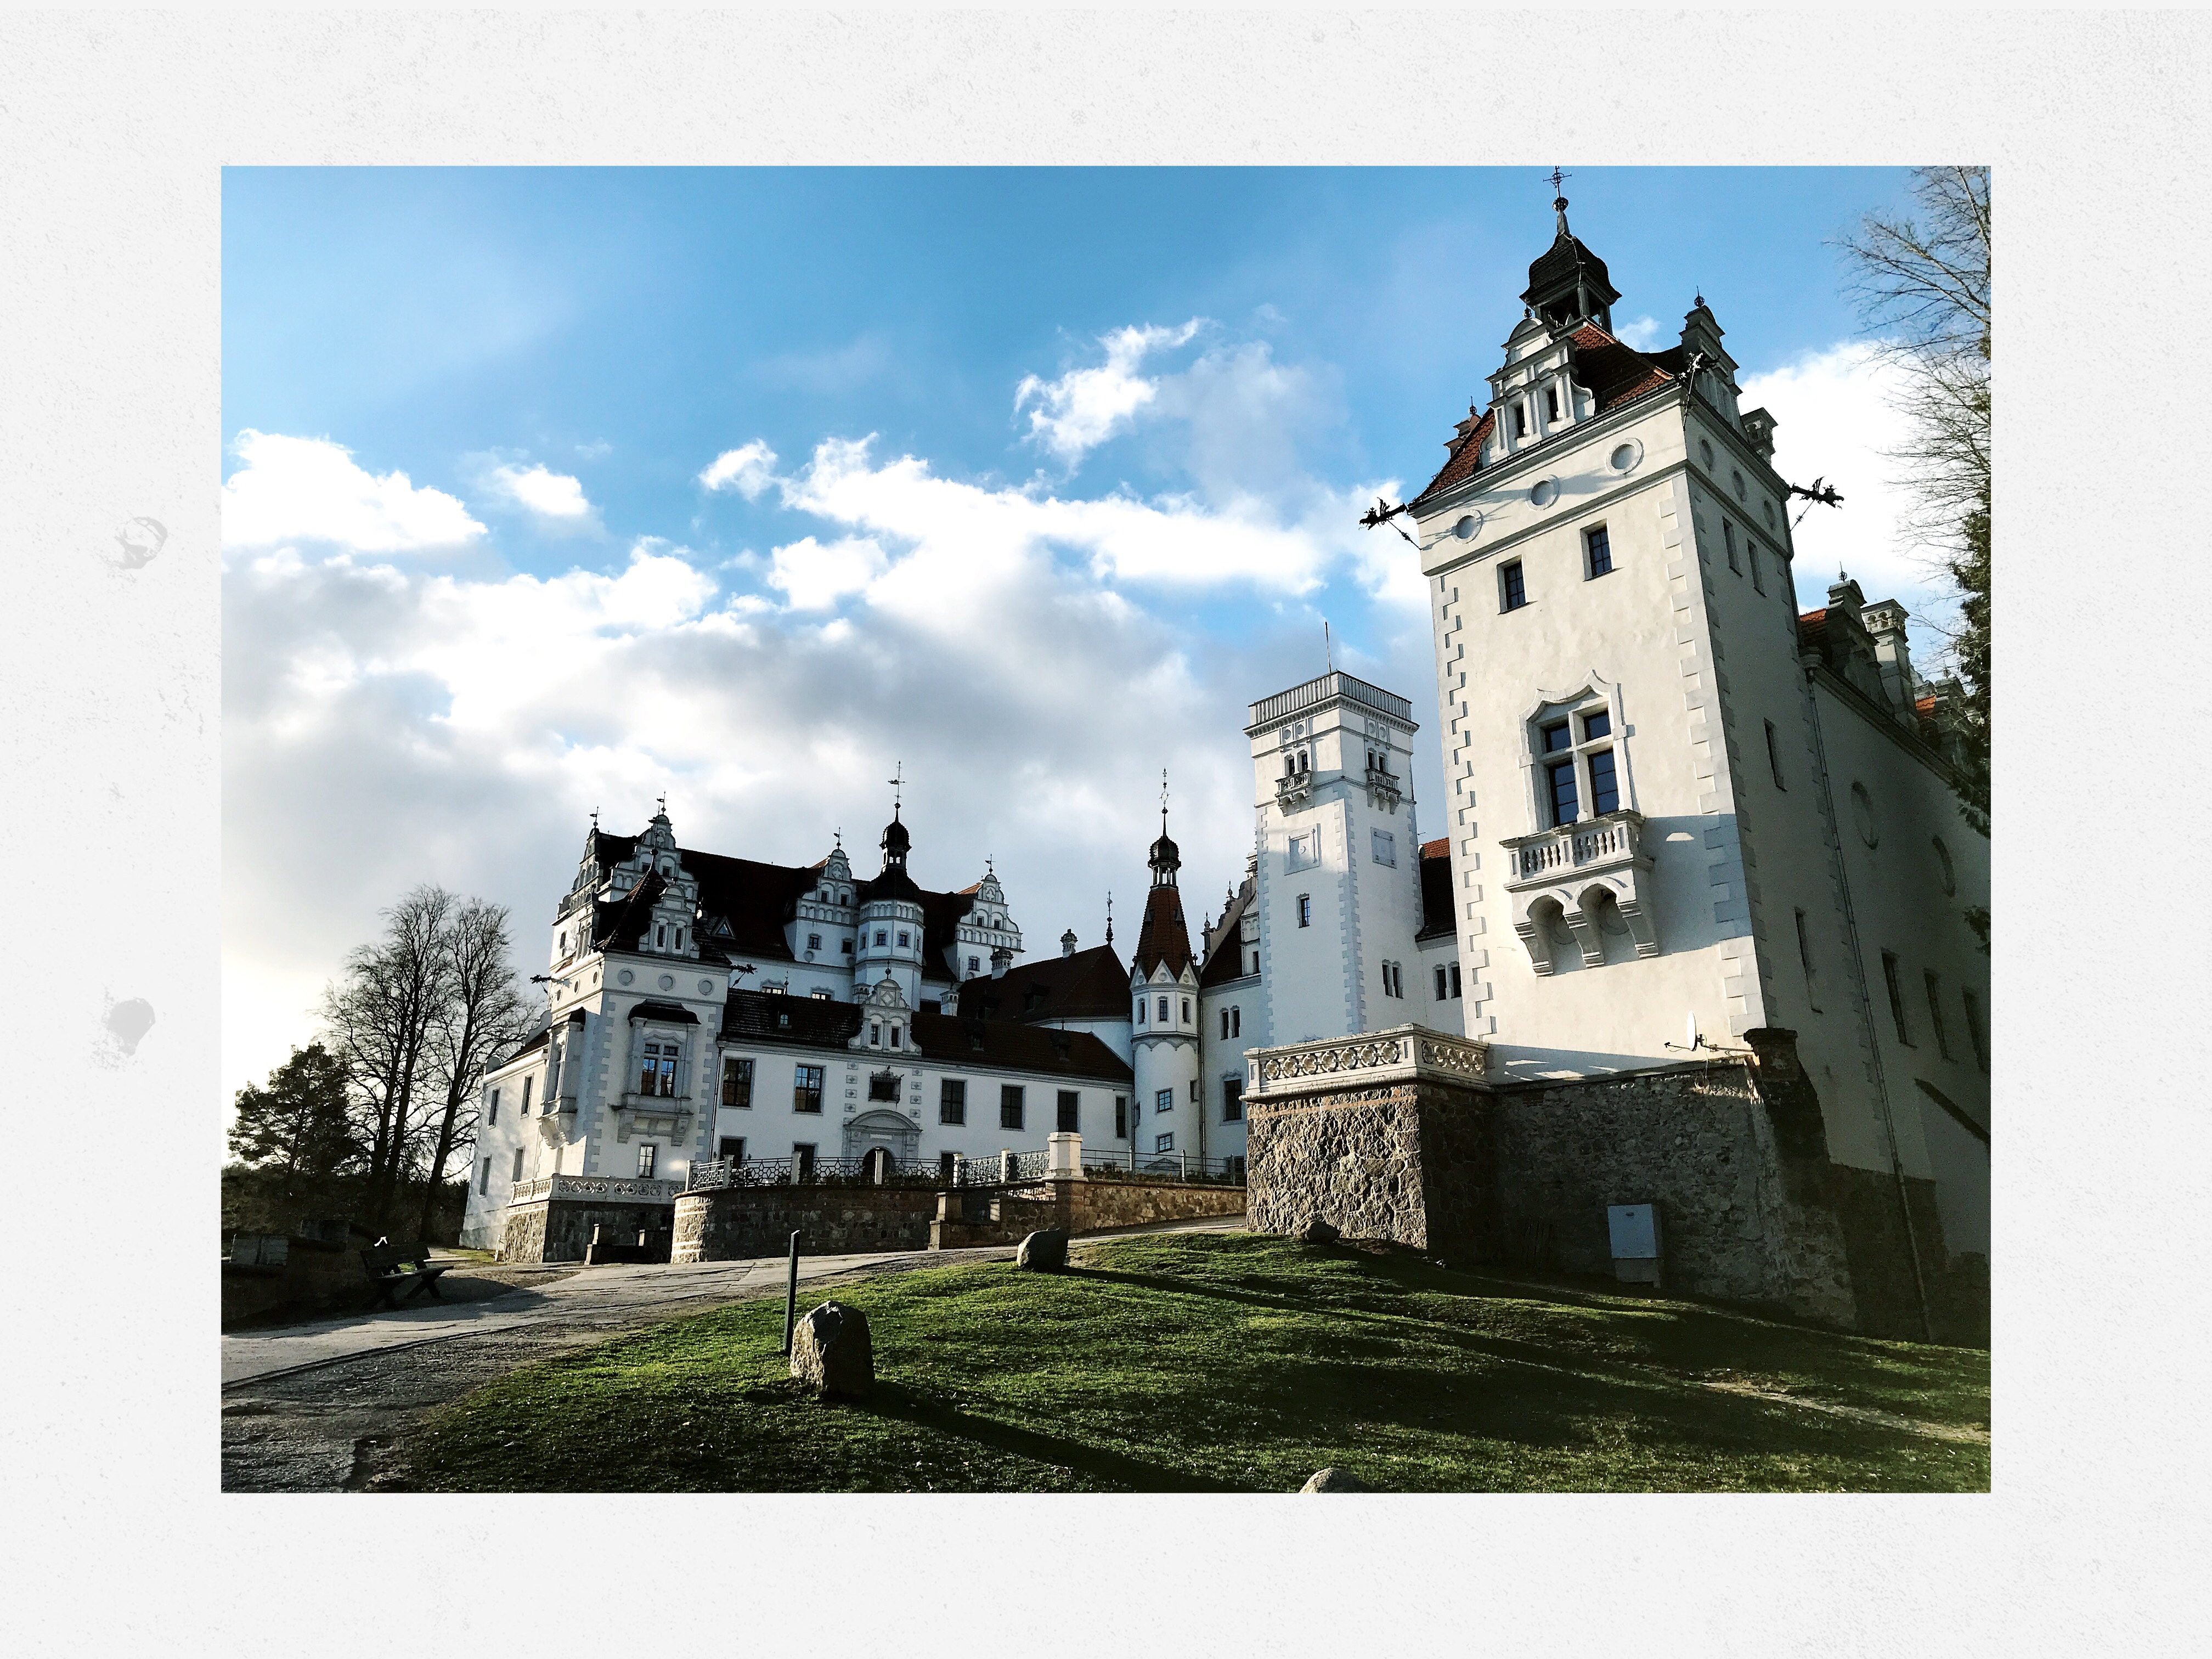 Castle Boitzenburg